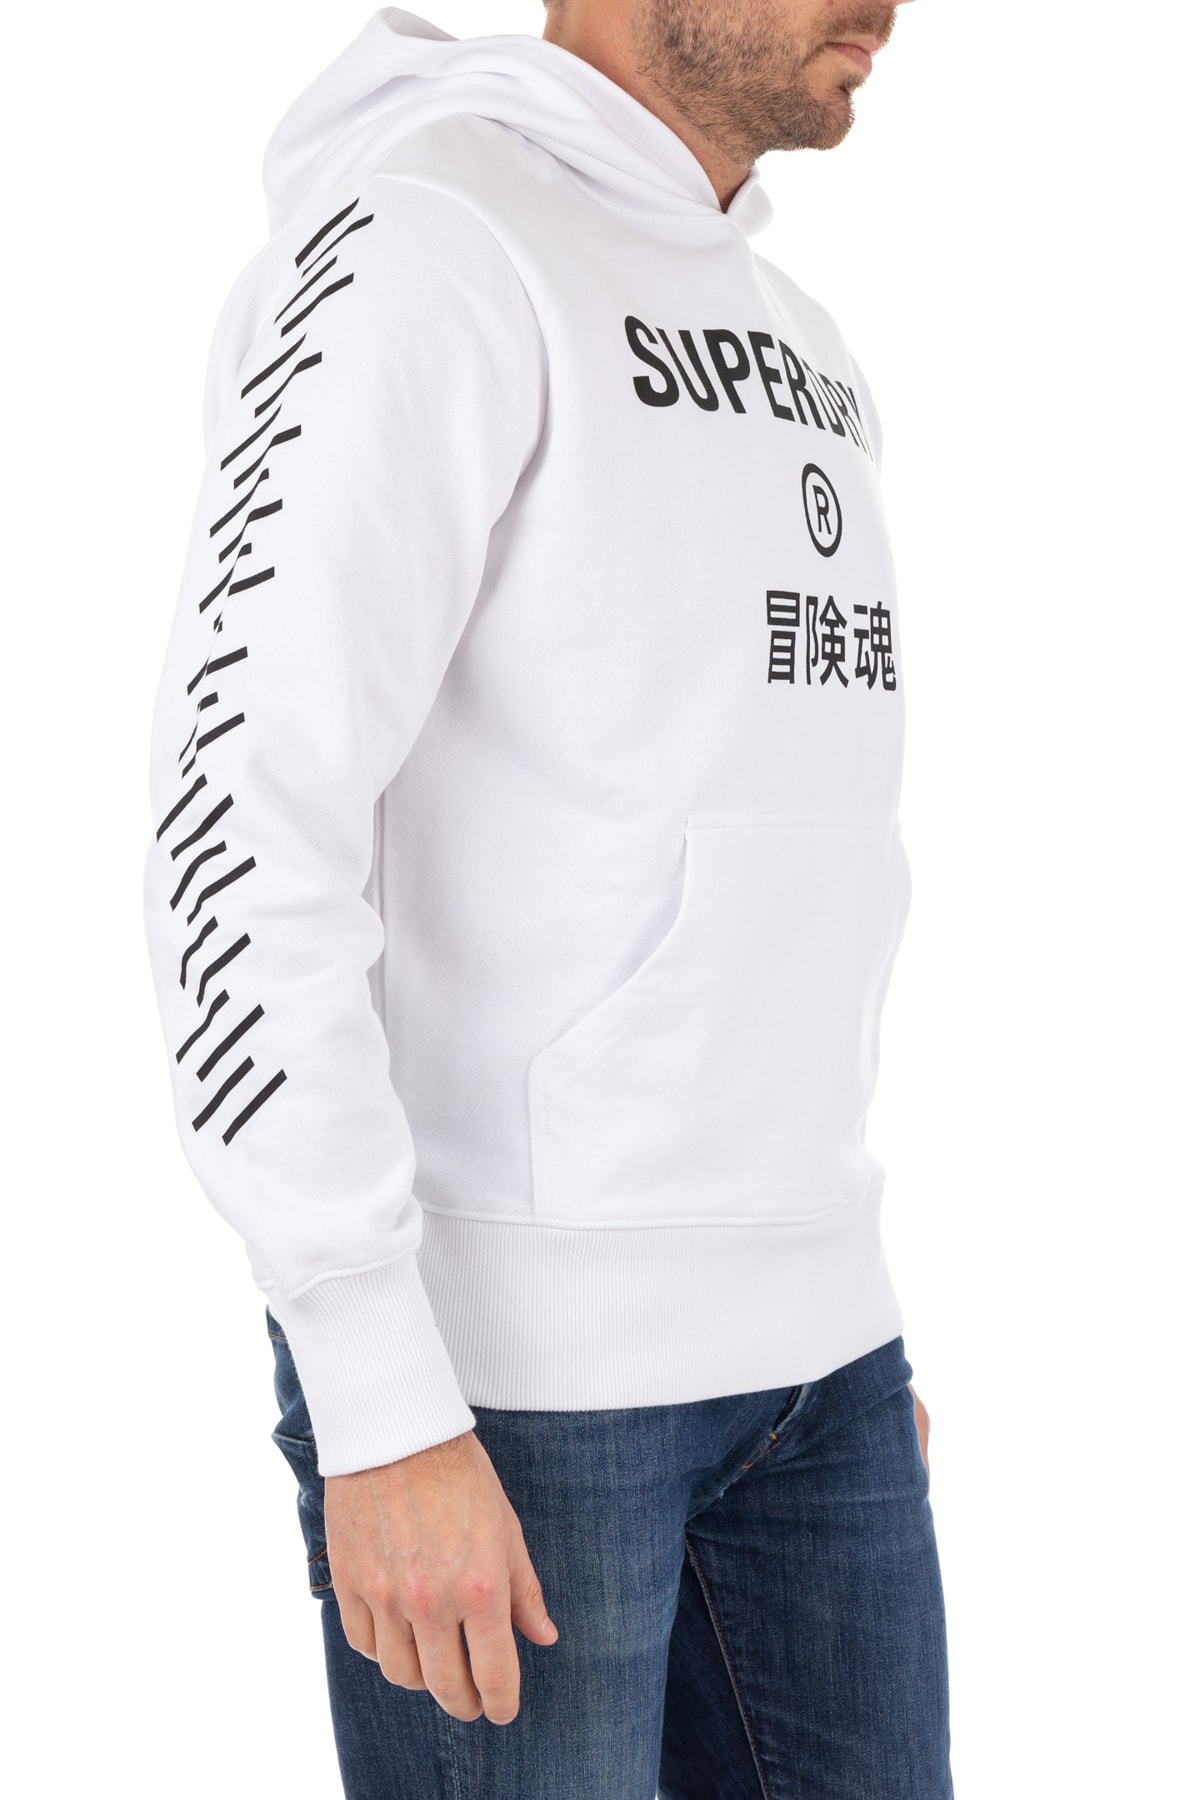 SUPERDRY Sweatshirt Weiß Regular Fit Fast ausverkauft